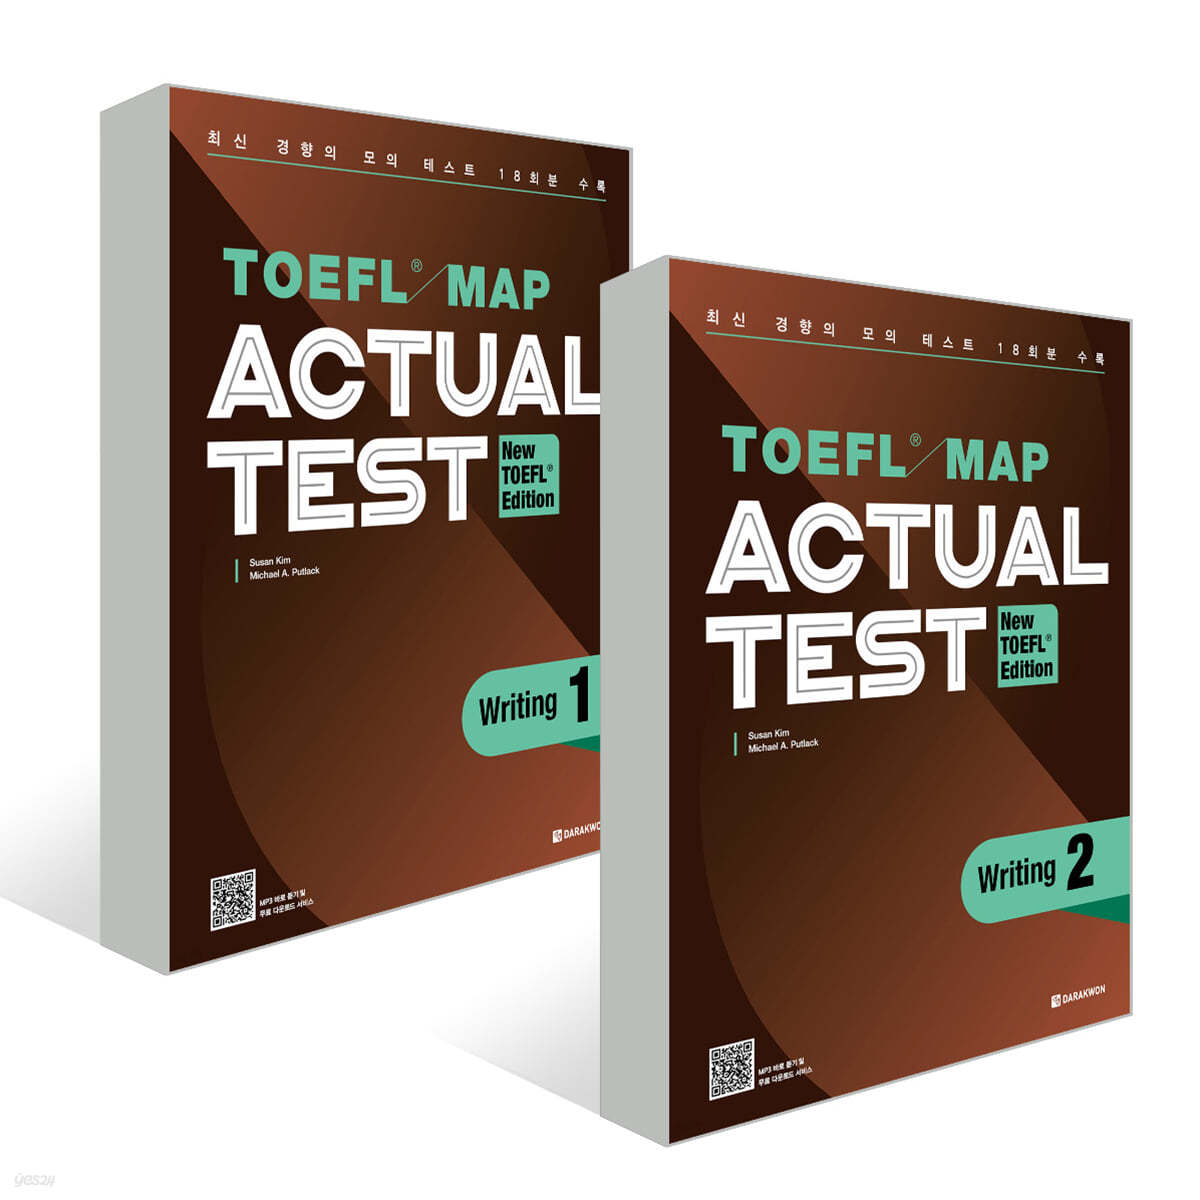 TOEFL MAP ACTUAL TEST Writing 1,2 권 세트